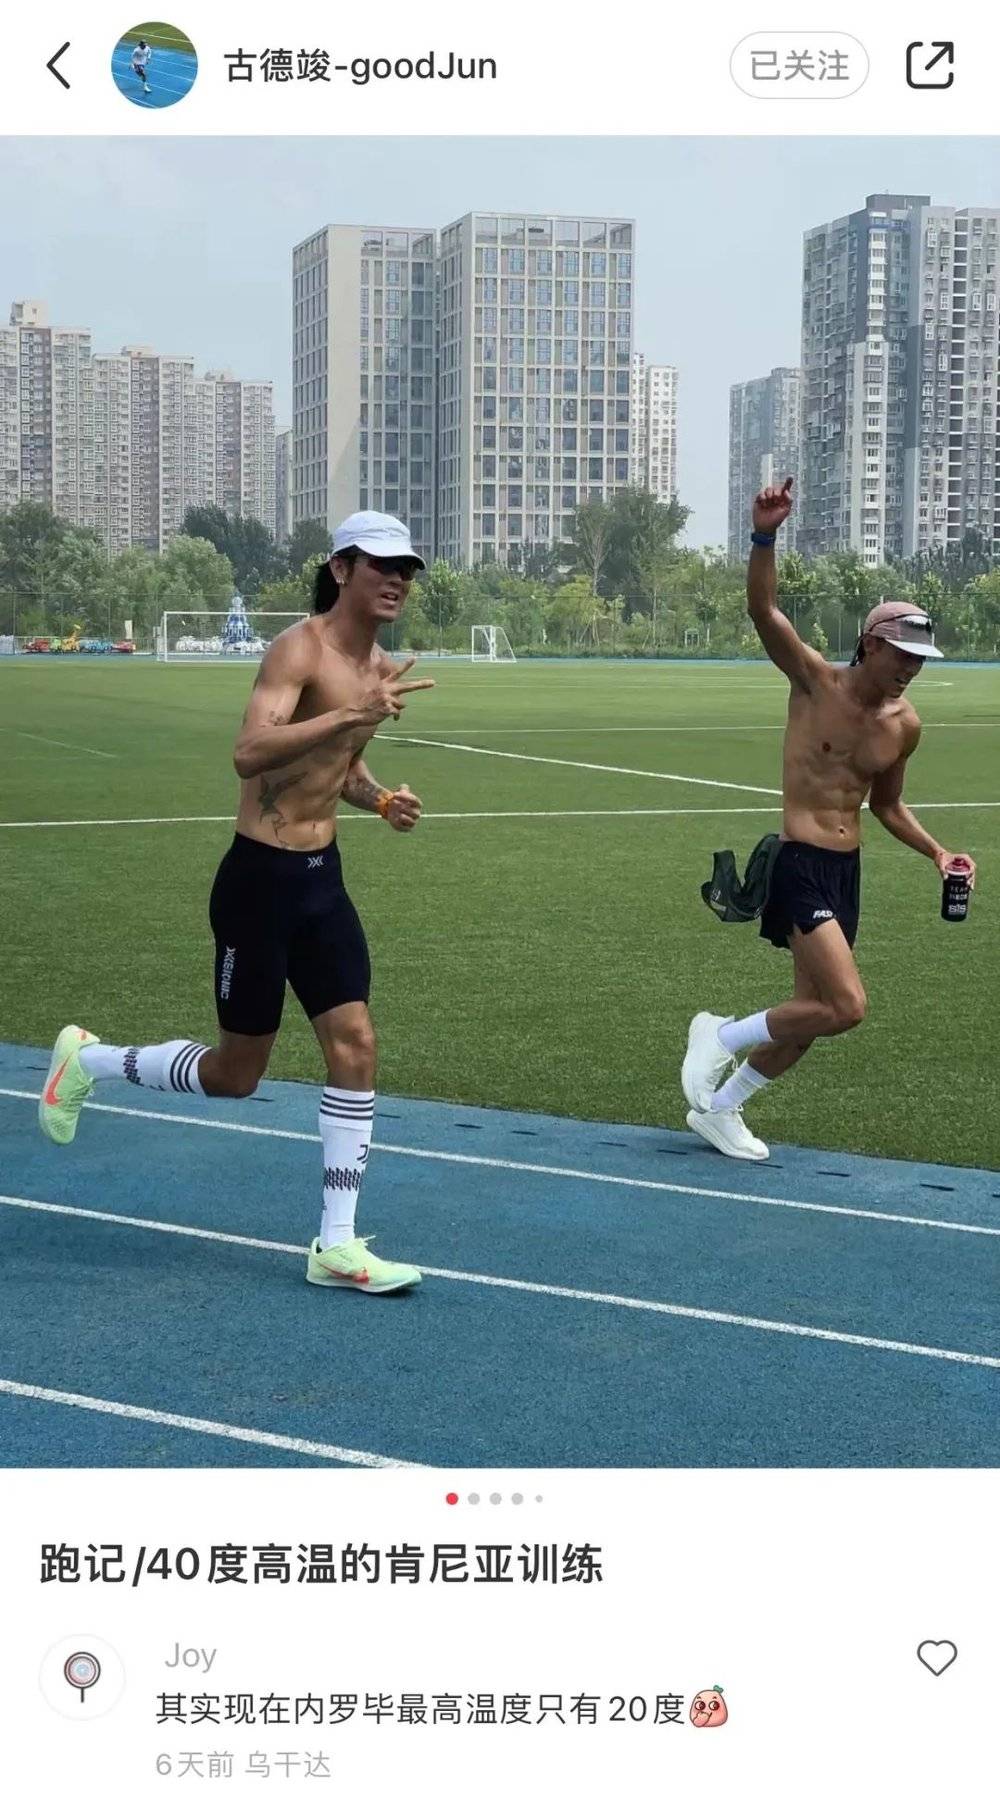 跑者优秀的身体和精神状态，让体感40度的北京有了一种热带野性美。图片来自小红书@古德竣-goodJun